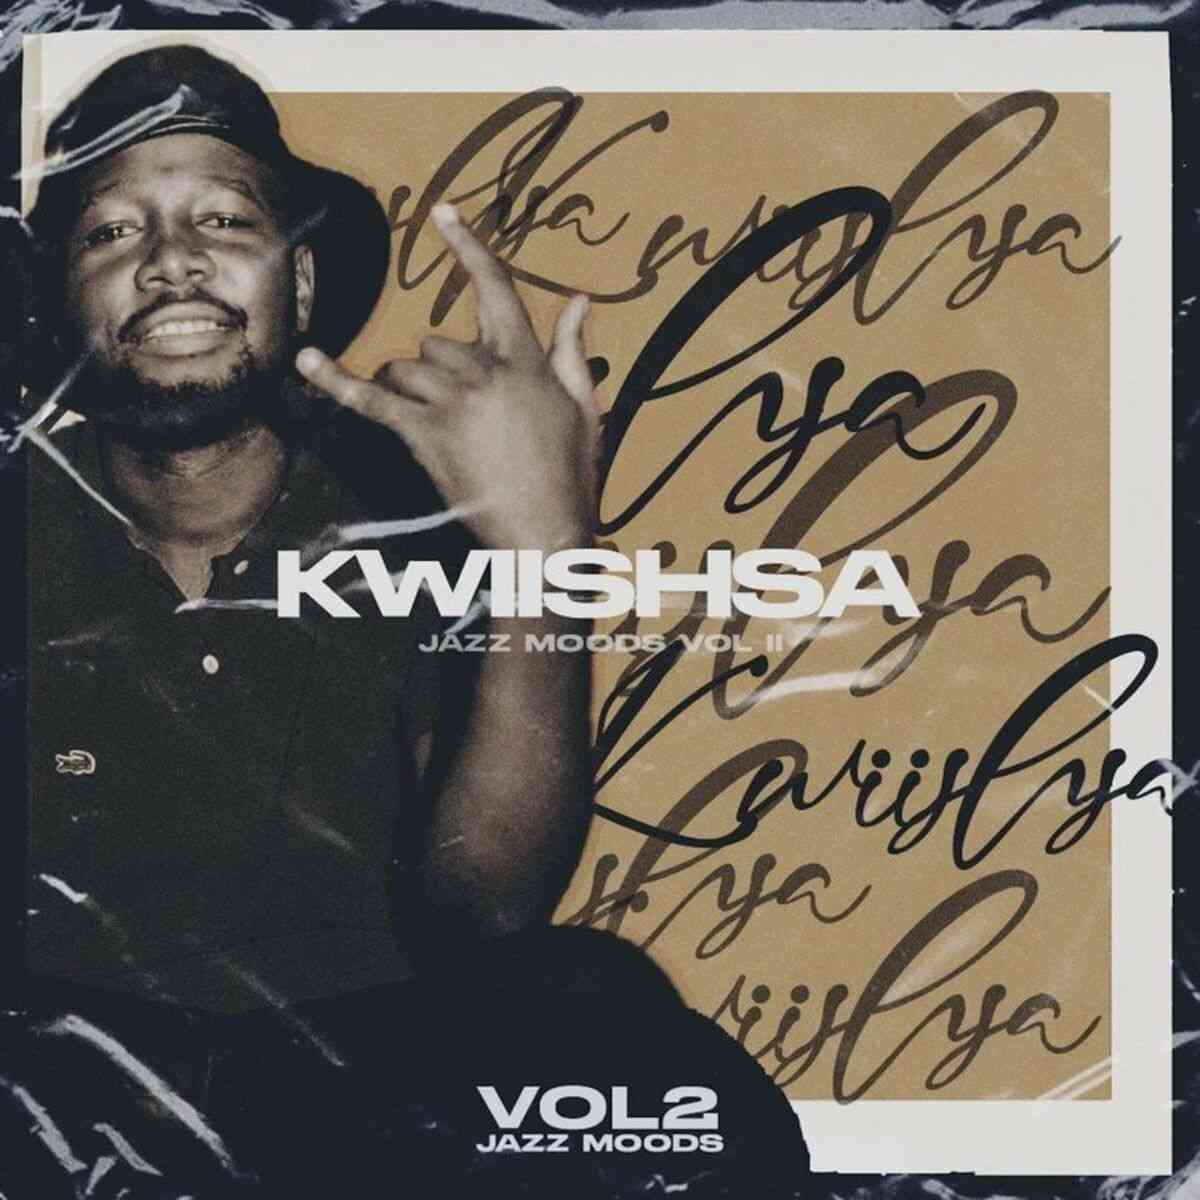 Kwiish SA – The Jazz Moods Vol. 2 EP